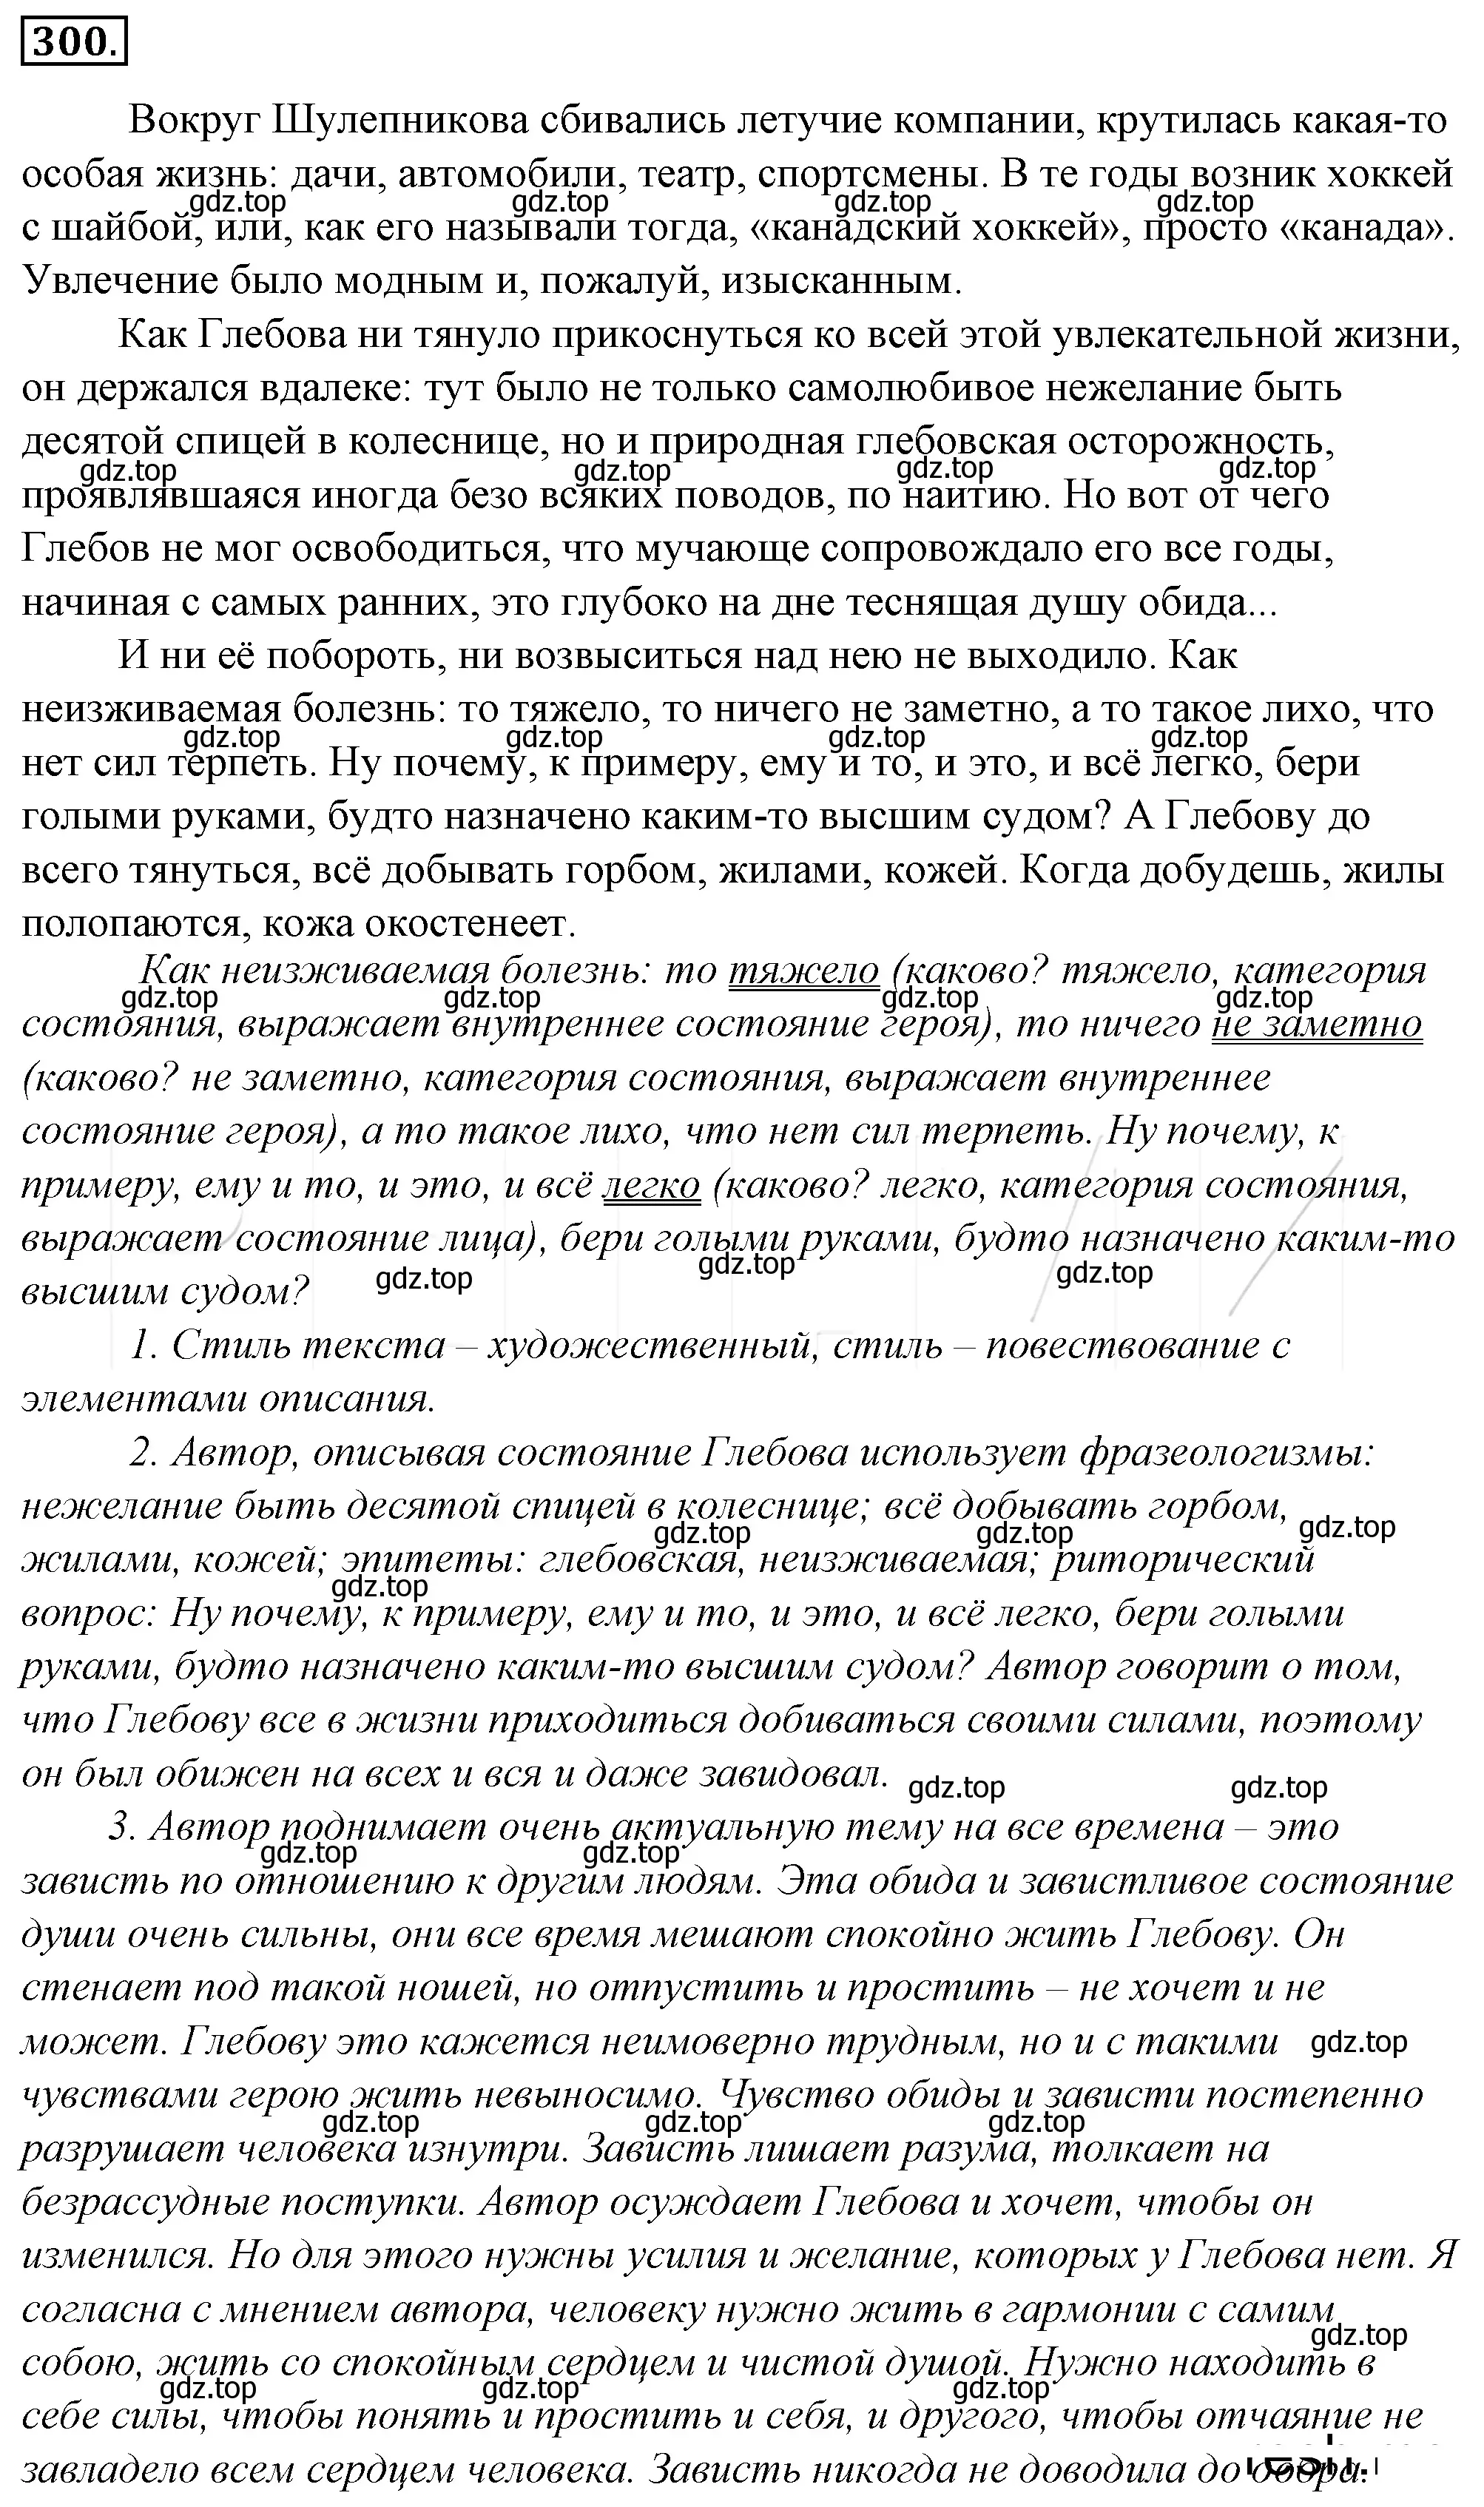 Решение 4. номер 324 (страница 301) гдз по русскому языку 10-11 класс Гольцова, Шамшин, учебник 1 часть